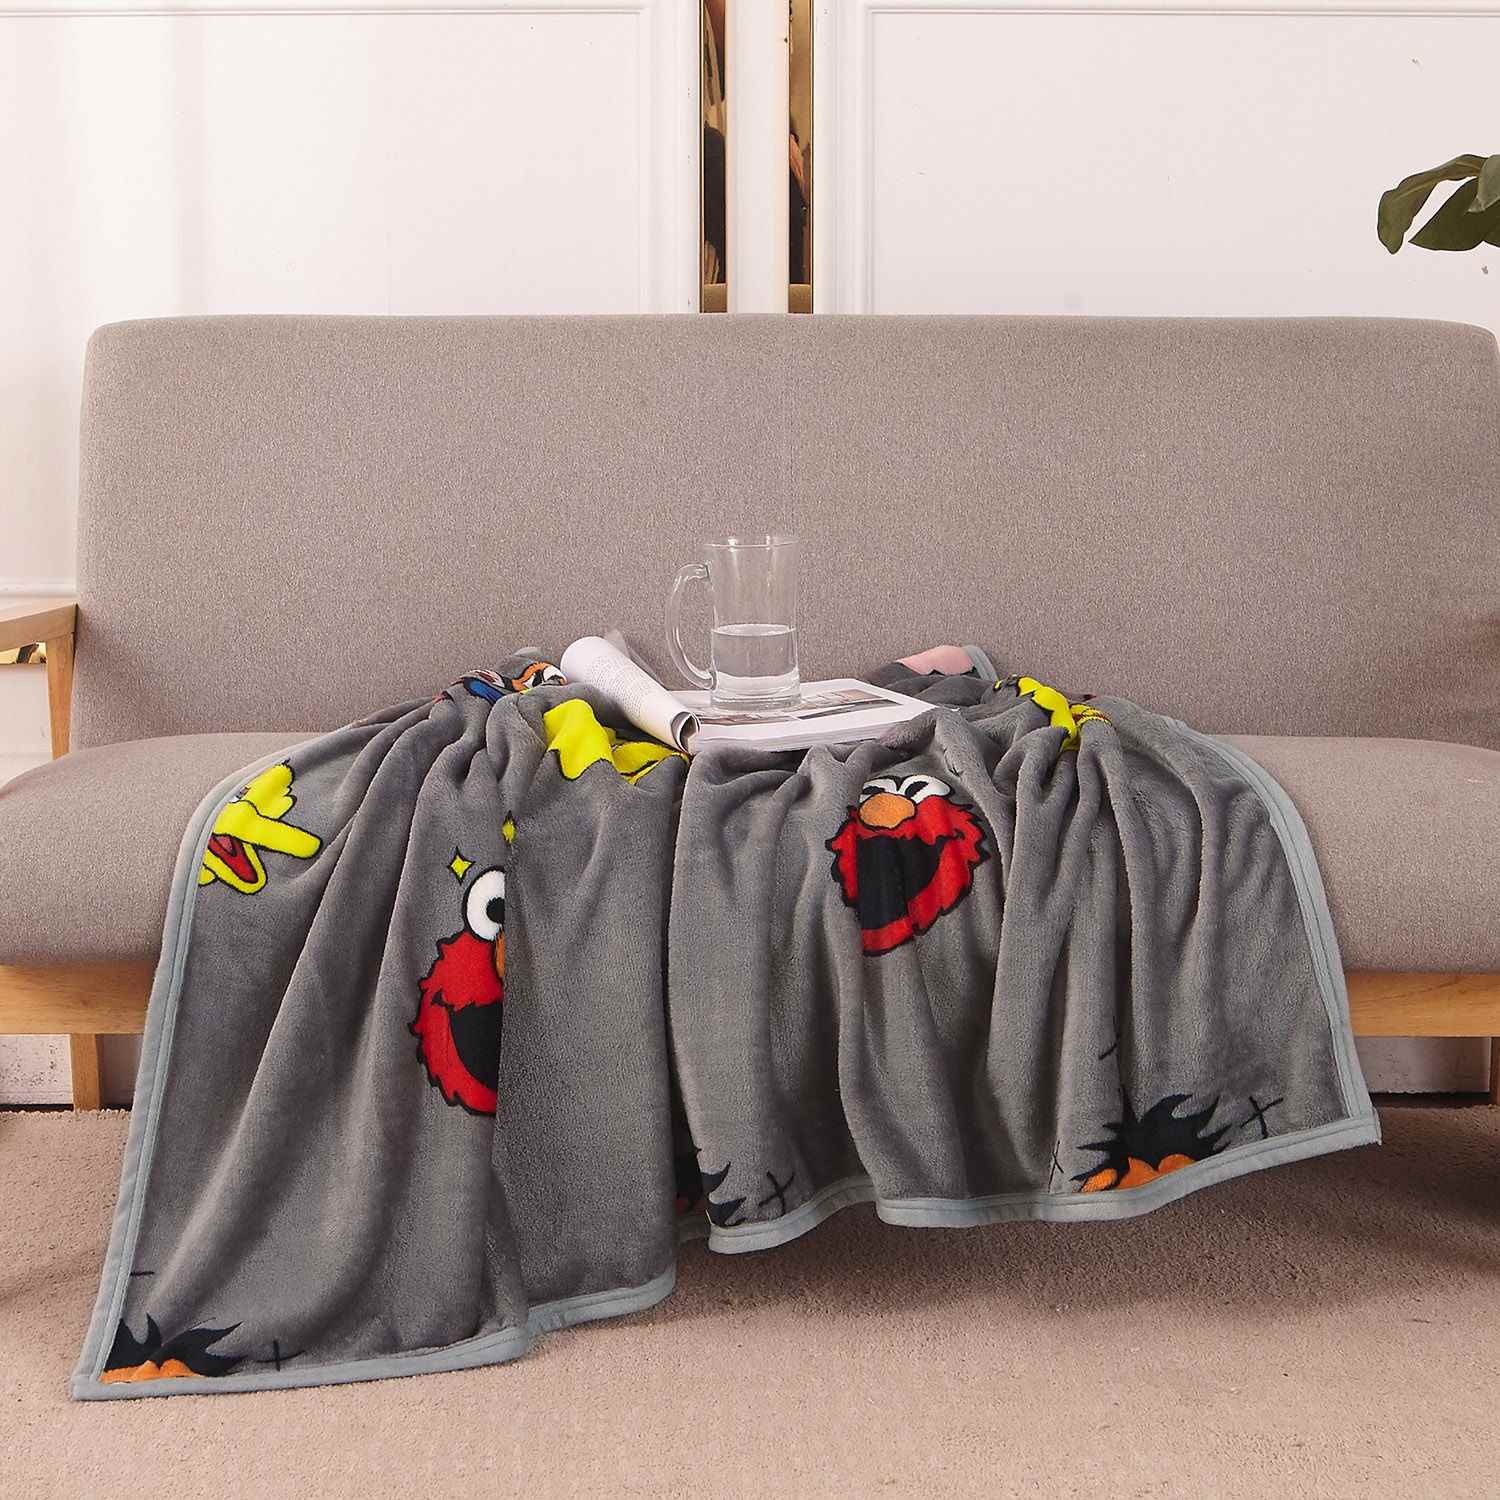 铺在床上的毯子夏季珊瑚绒小毛毯单人午睡毯办公室盖毯盖腿毯子宿